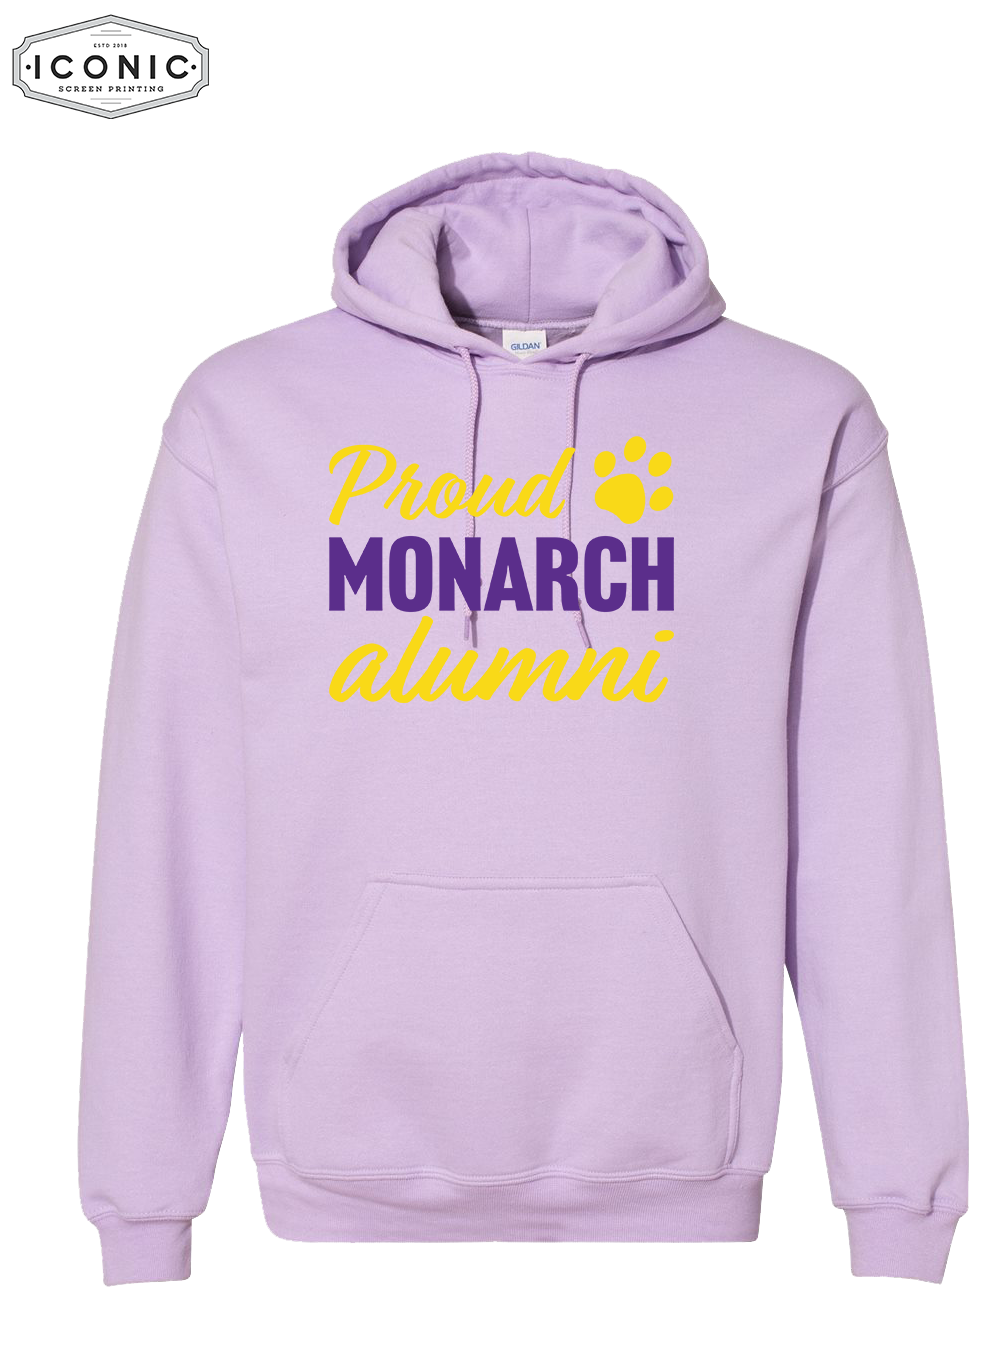 Proud Monarch Alumni - Heavy Blend Hooded Sweatshirt